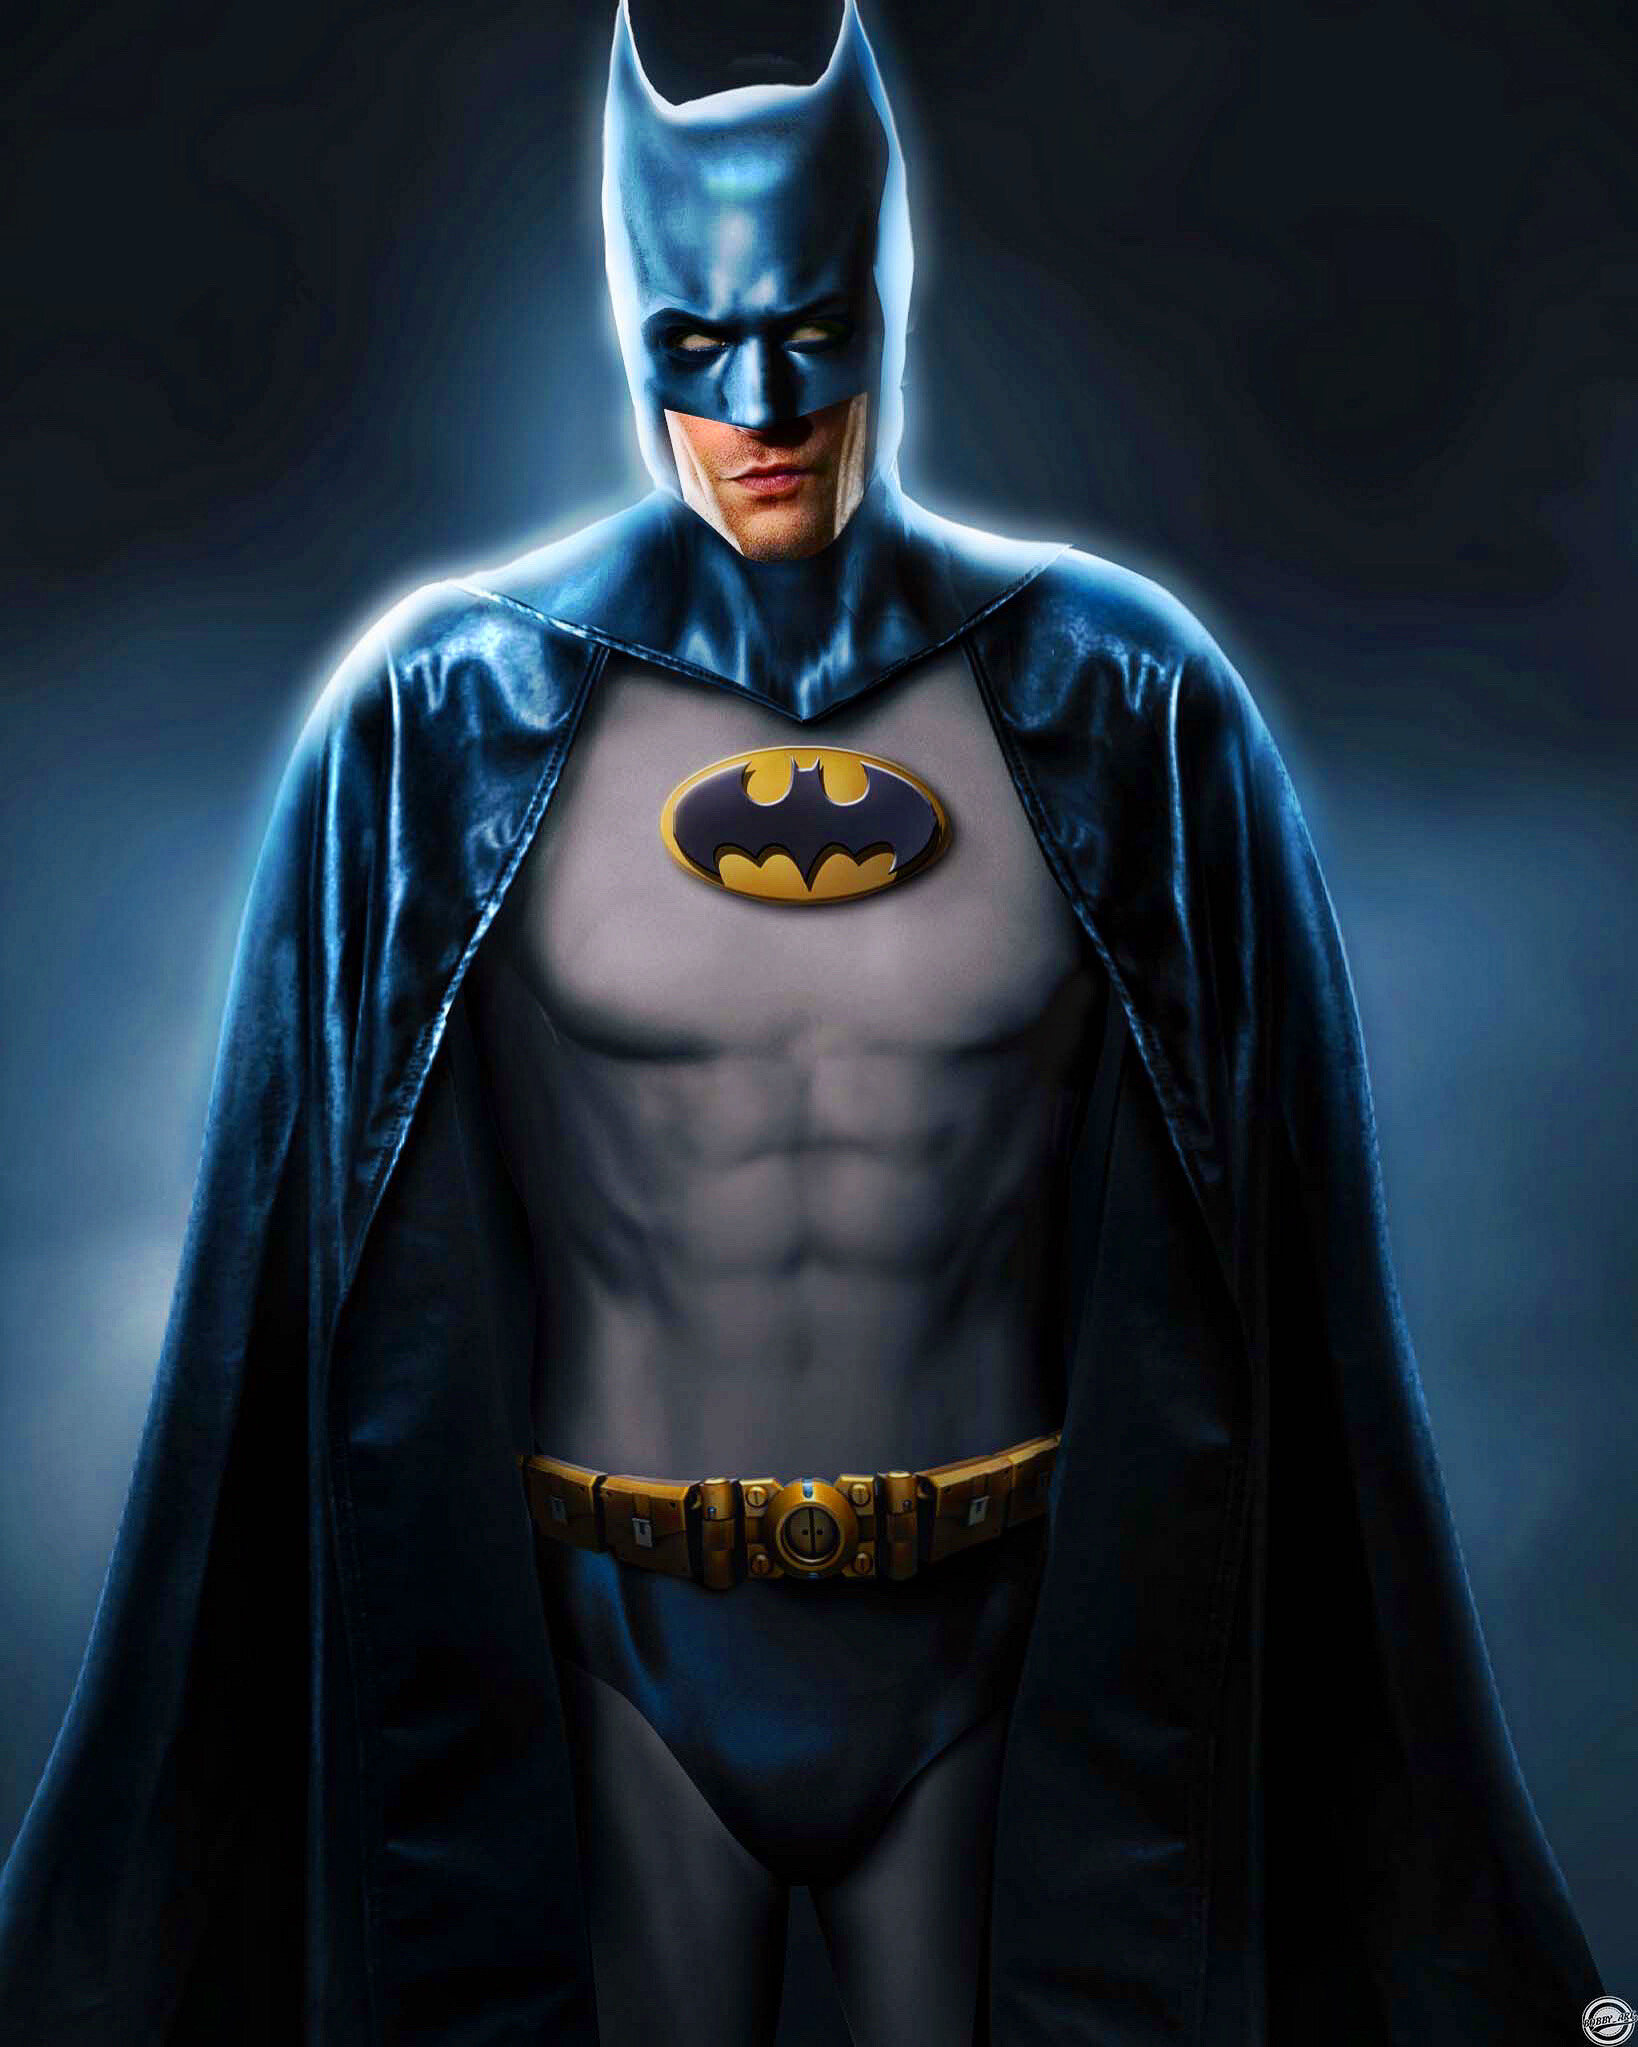 ArtStation - Oliver Jackson-Cohen as the DCU's Batman